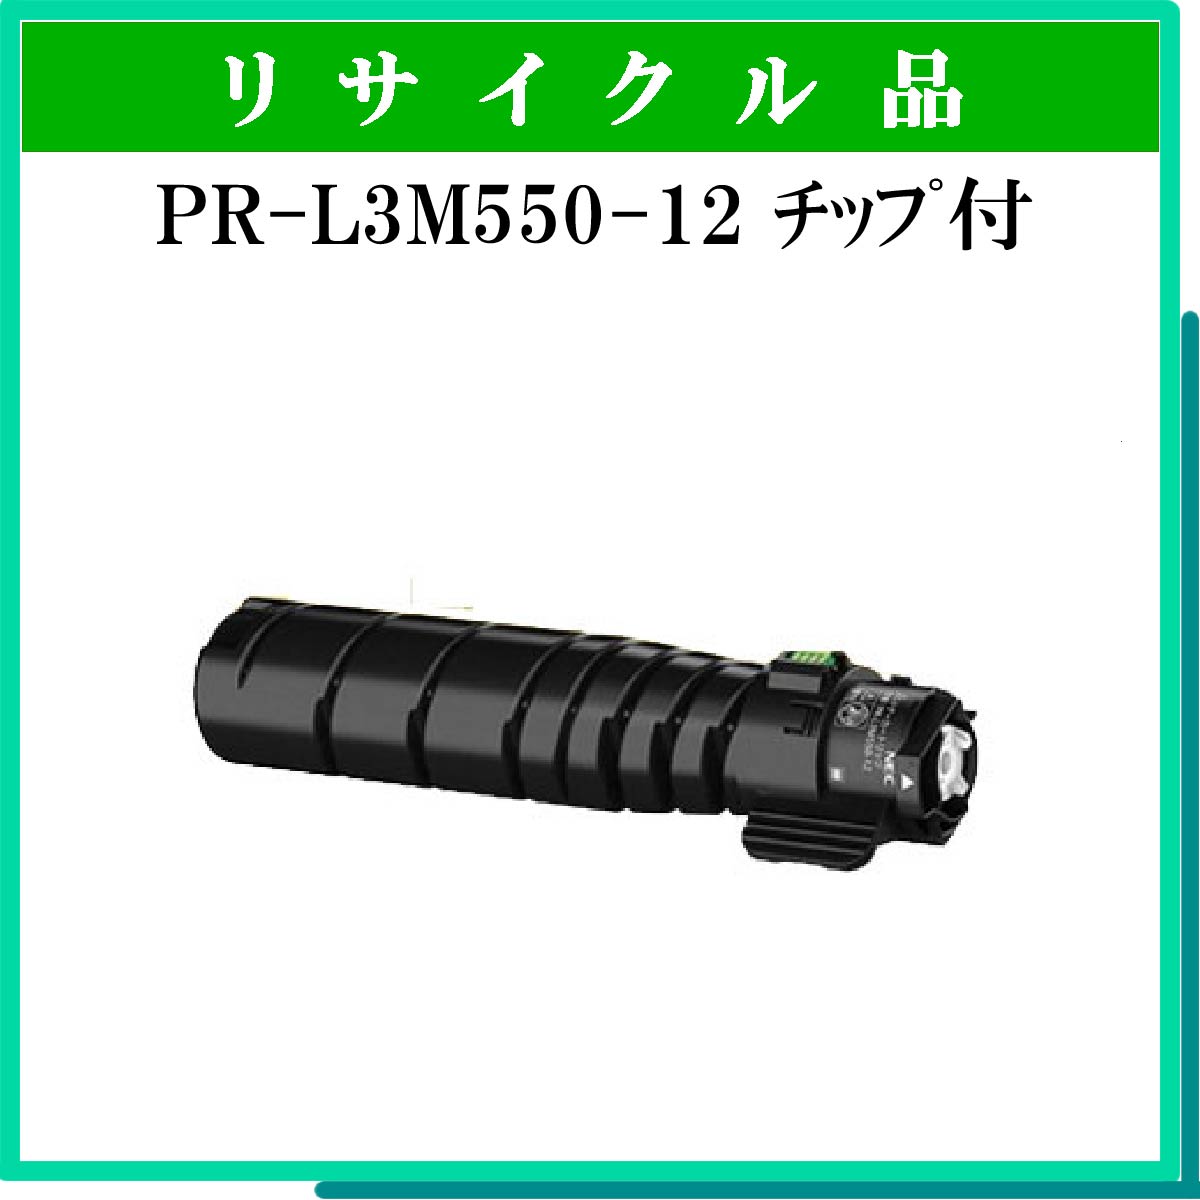 PR-L3M550-12 ﾁｯﾌﾟ付